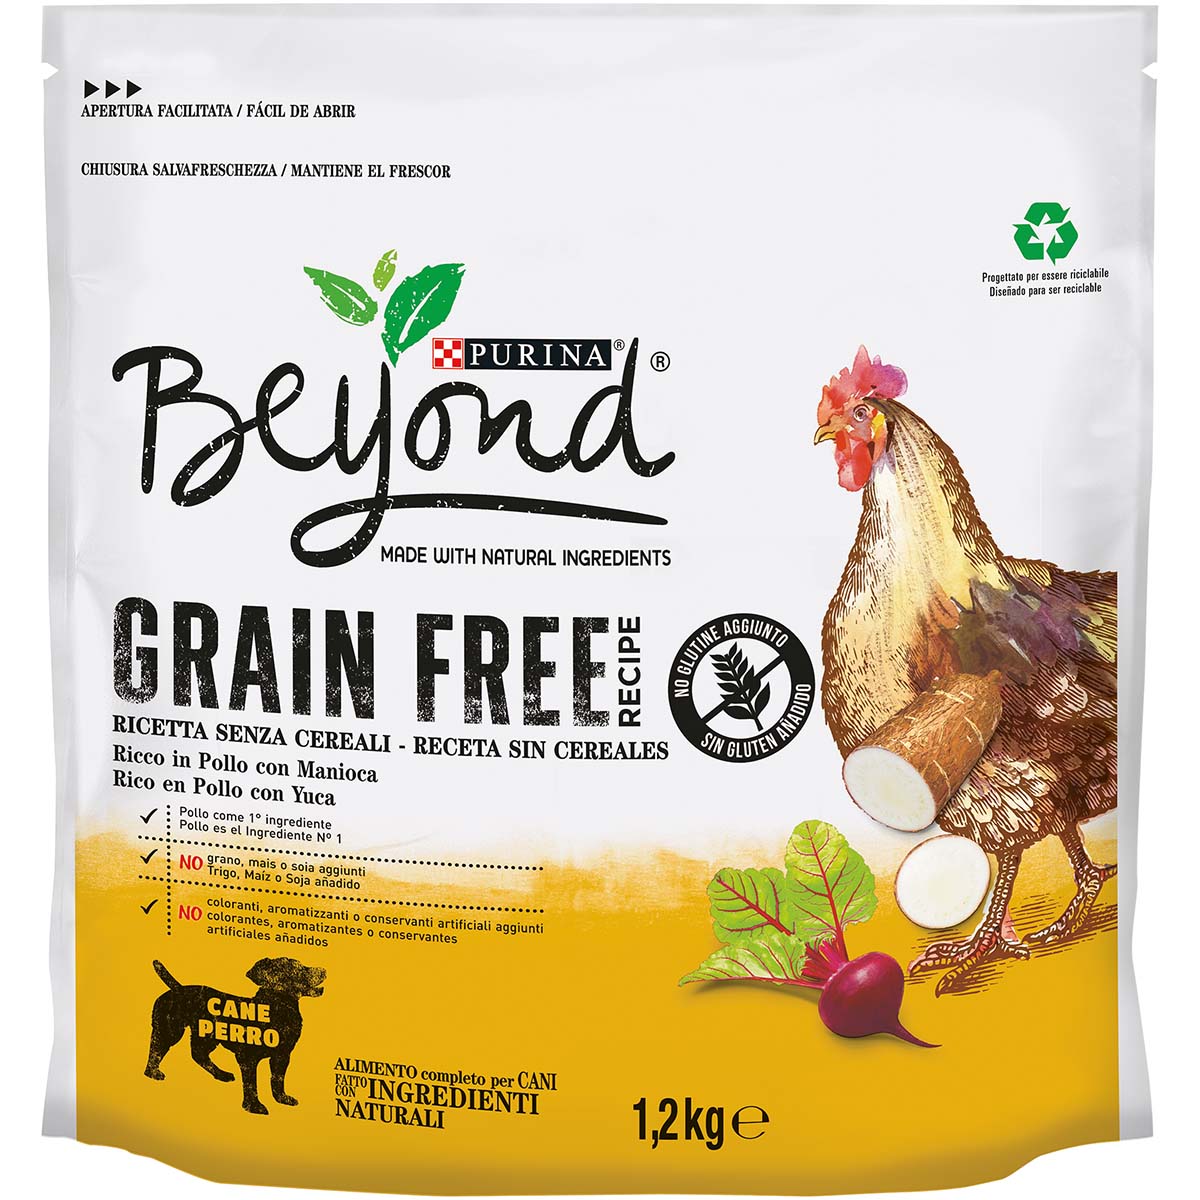 Beyond Crocchette per cani Grain Free ricche in pollo con manioca - 1.2kg